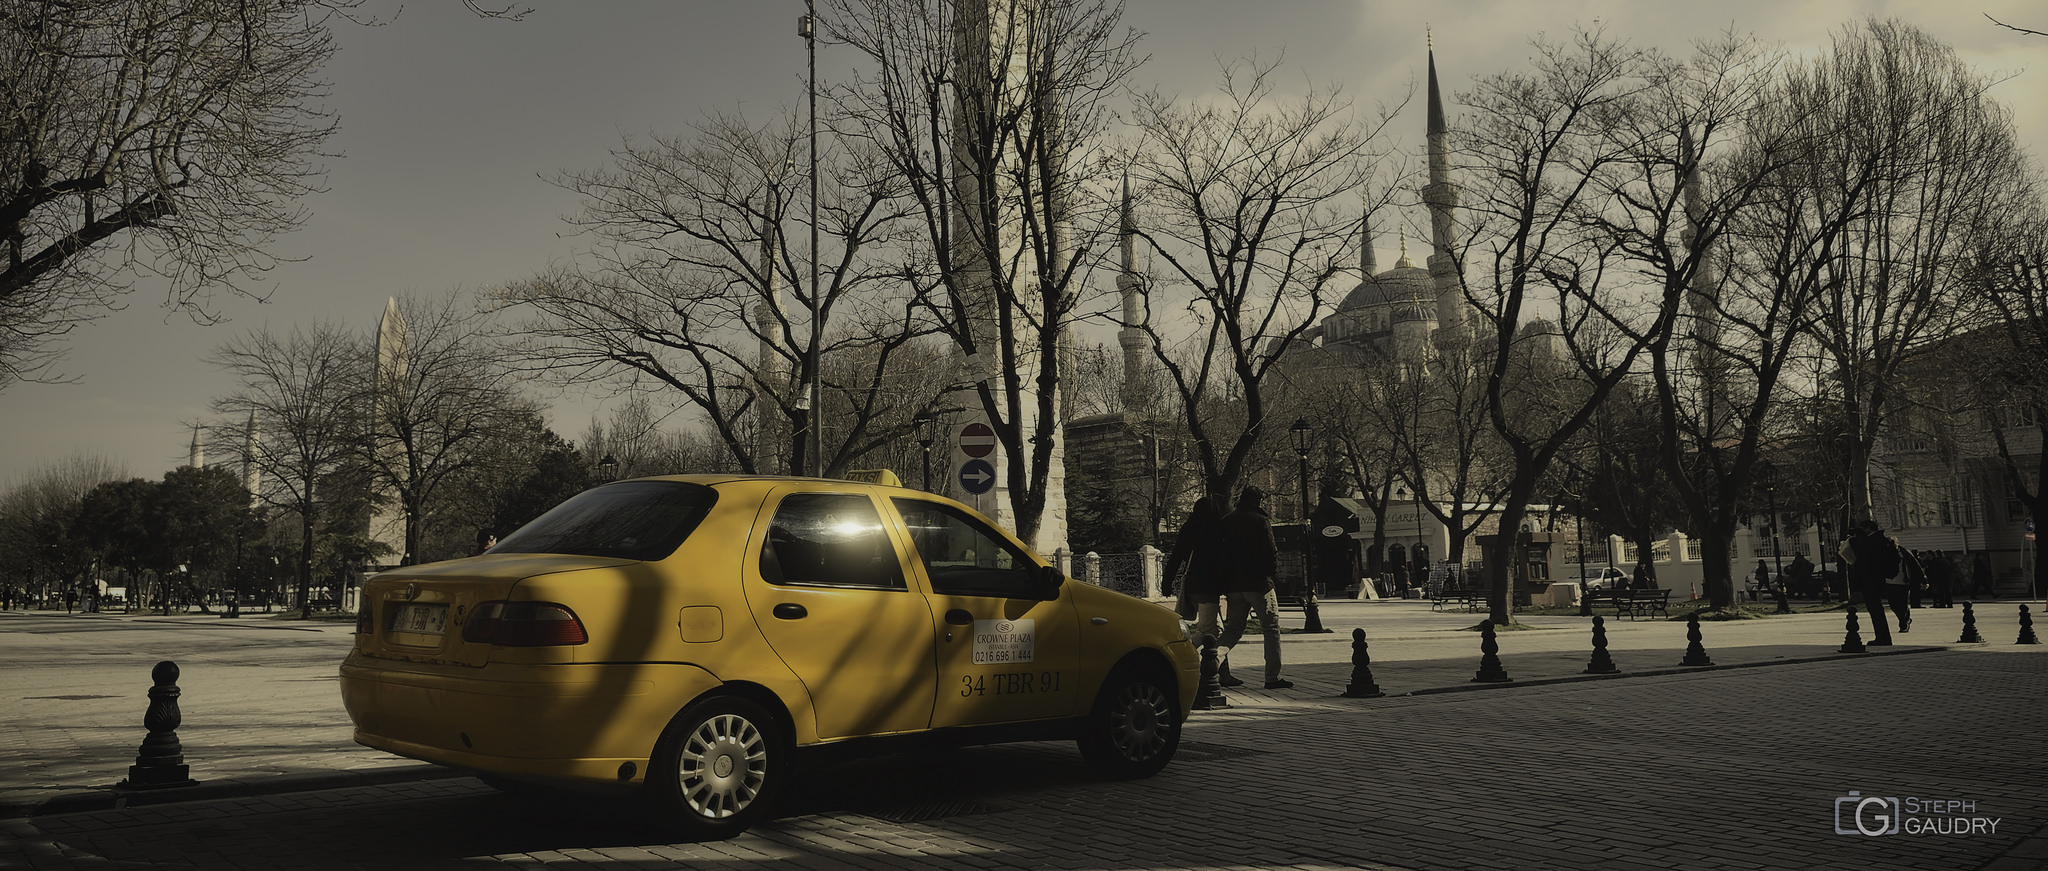 Renkler, sarı taksi ve Sultanahmet Camii [sinemaskop] [Klik om de diavoorstelling te starten]